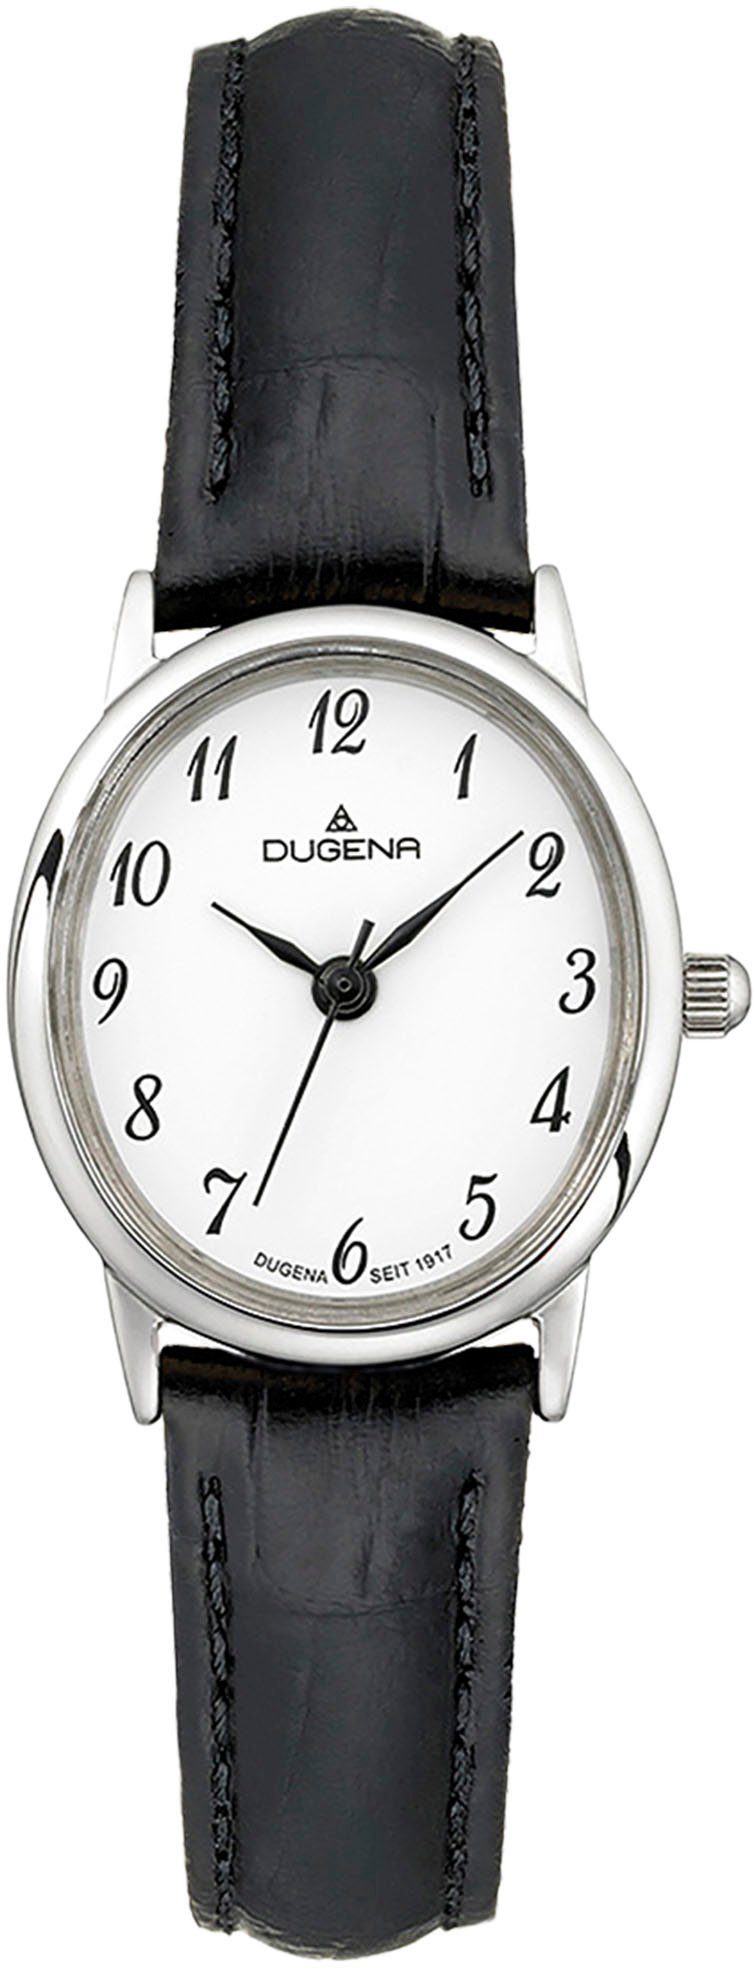 Dugena Quarzuhr Vintage, 4460729 Silber